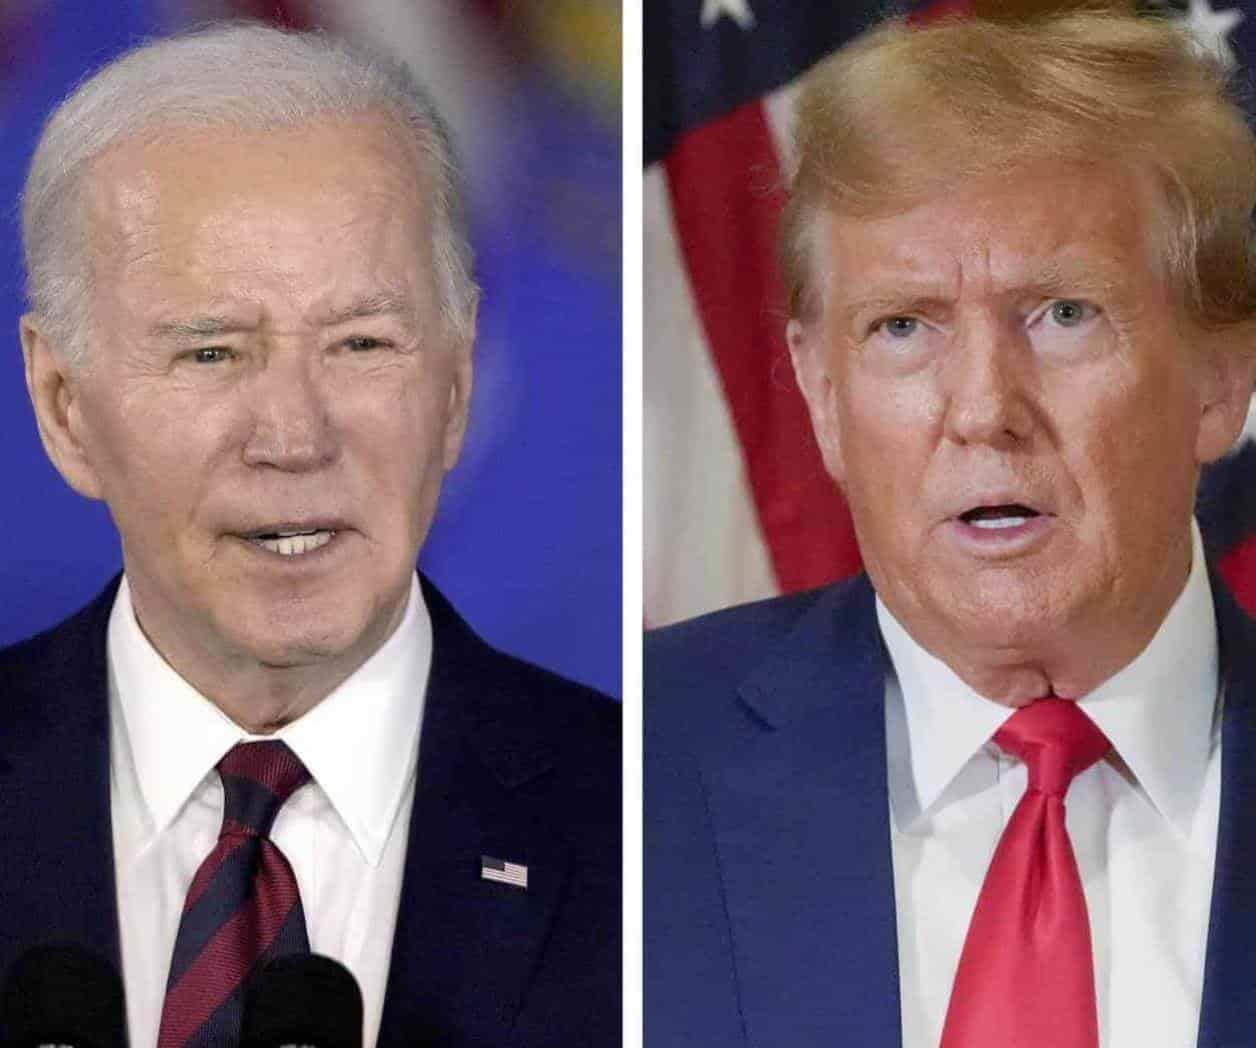 Afirma Biden que estaría encantado de debatir con Trump